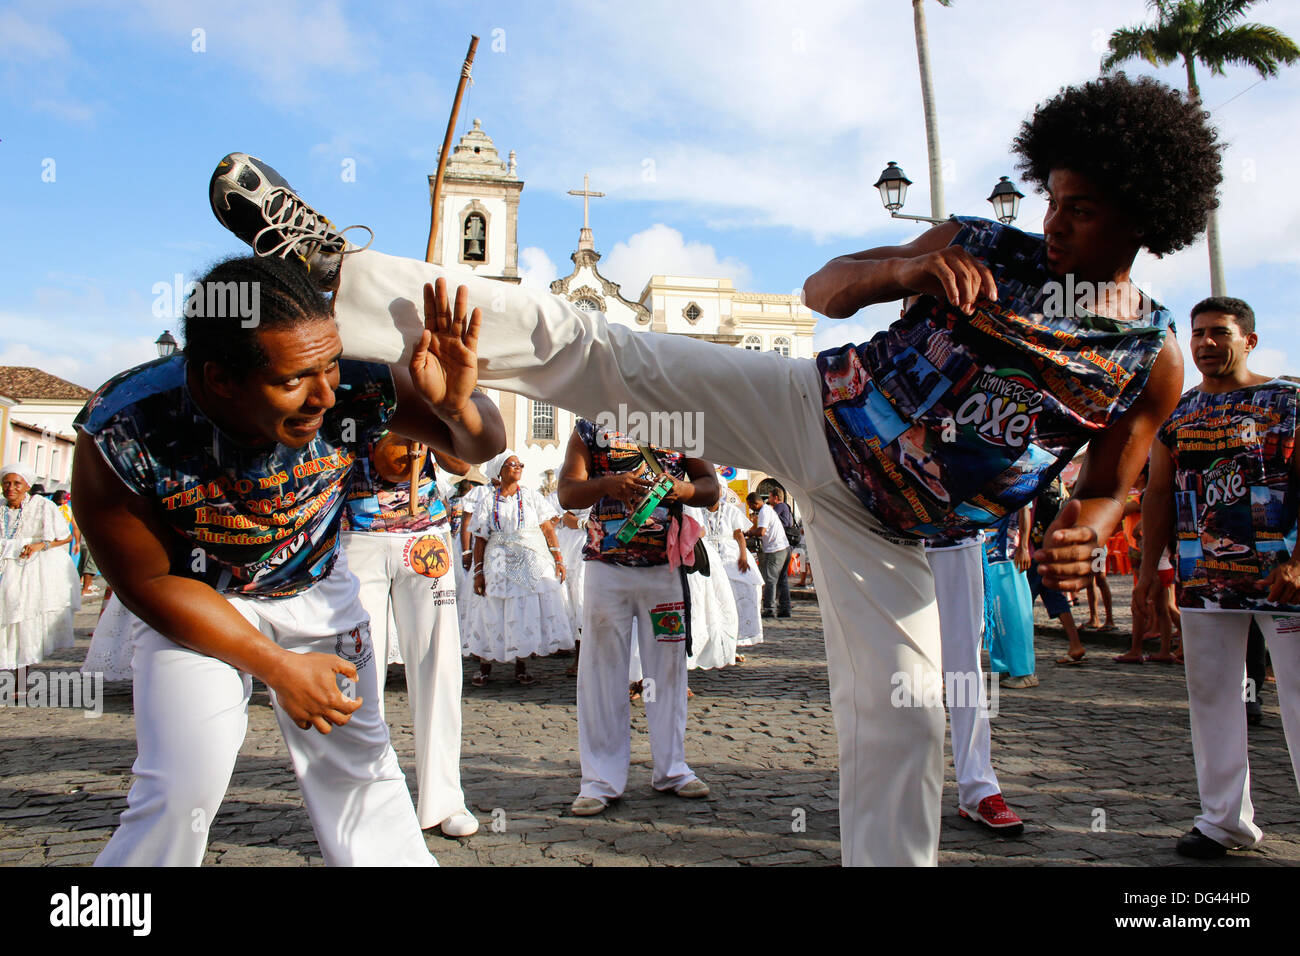 Bande de capoeira au Salvador carnaval, Bahia, Brésil, Amérique du Sud Banque D'Images